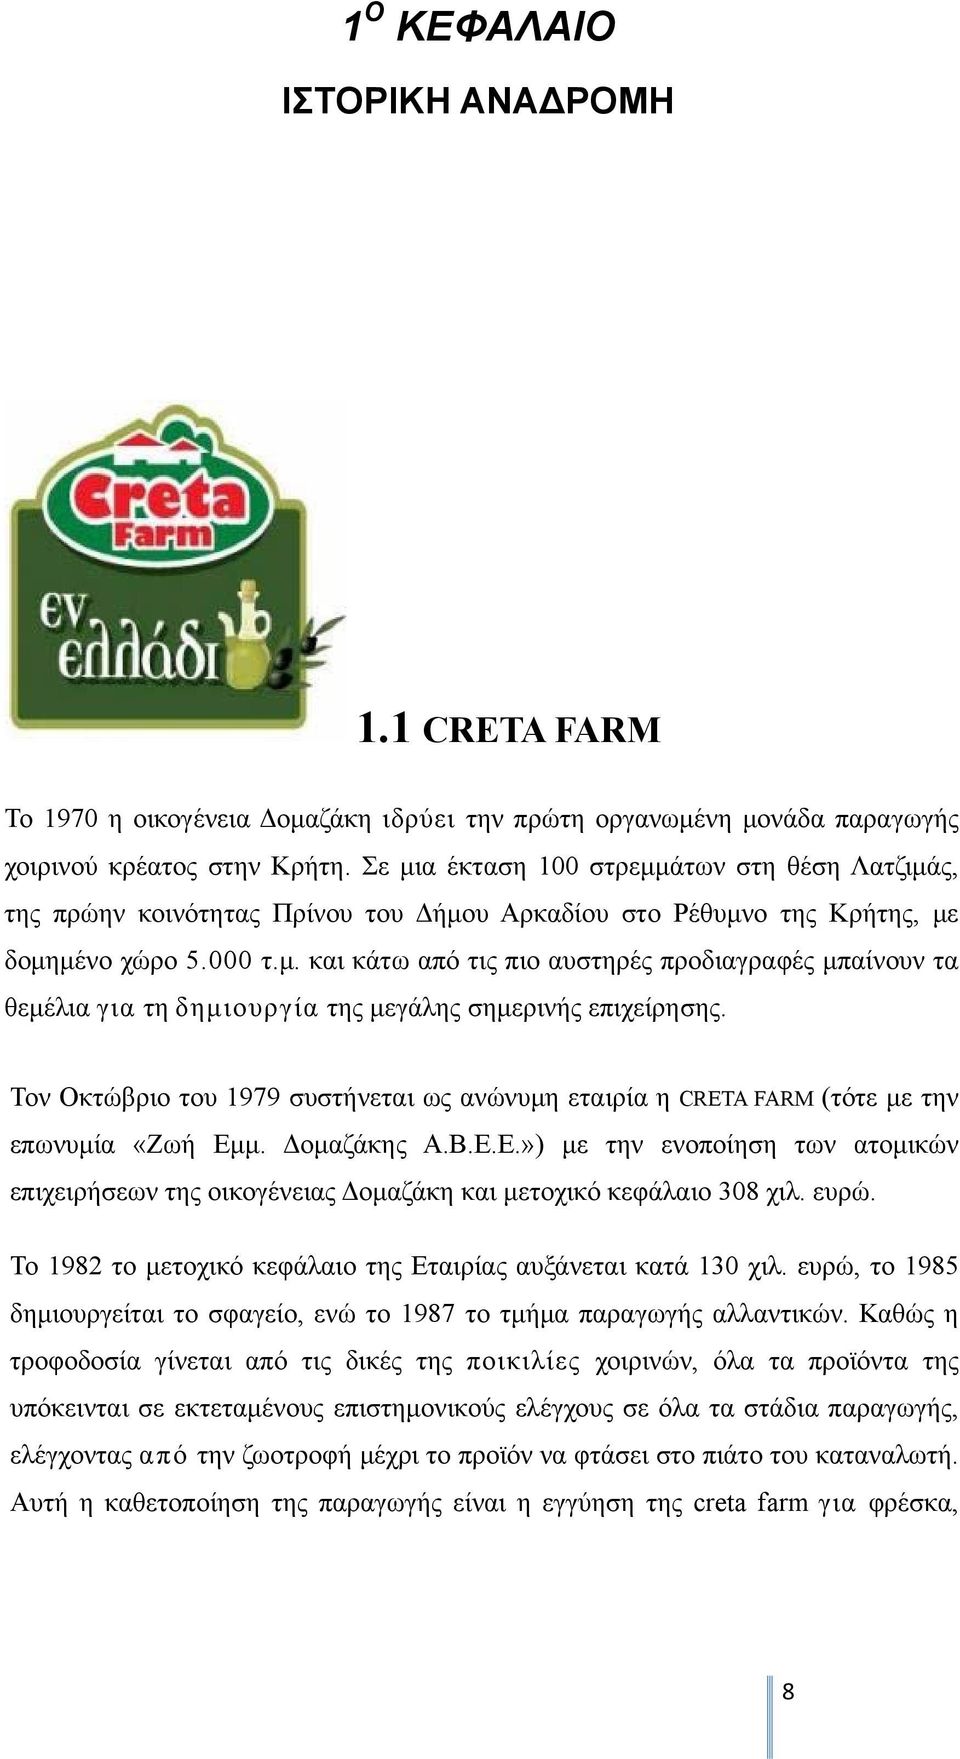 Τον Οκτώβριο του 1979 συστήνεται ως ανώνυμη εταιρία η CRETA FARM (τότε με την επωνυμία «Ζωή Εμμ. Δομαζάκης Α.Β.Ε.Ε.») με την ενοποίηση των ατομικών επιχειρήσεων της οικογένειας Δομαζάκη και μετοχικό κεφάλαιο 308 χιλ.